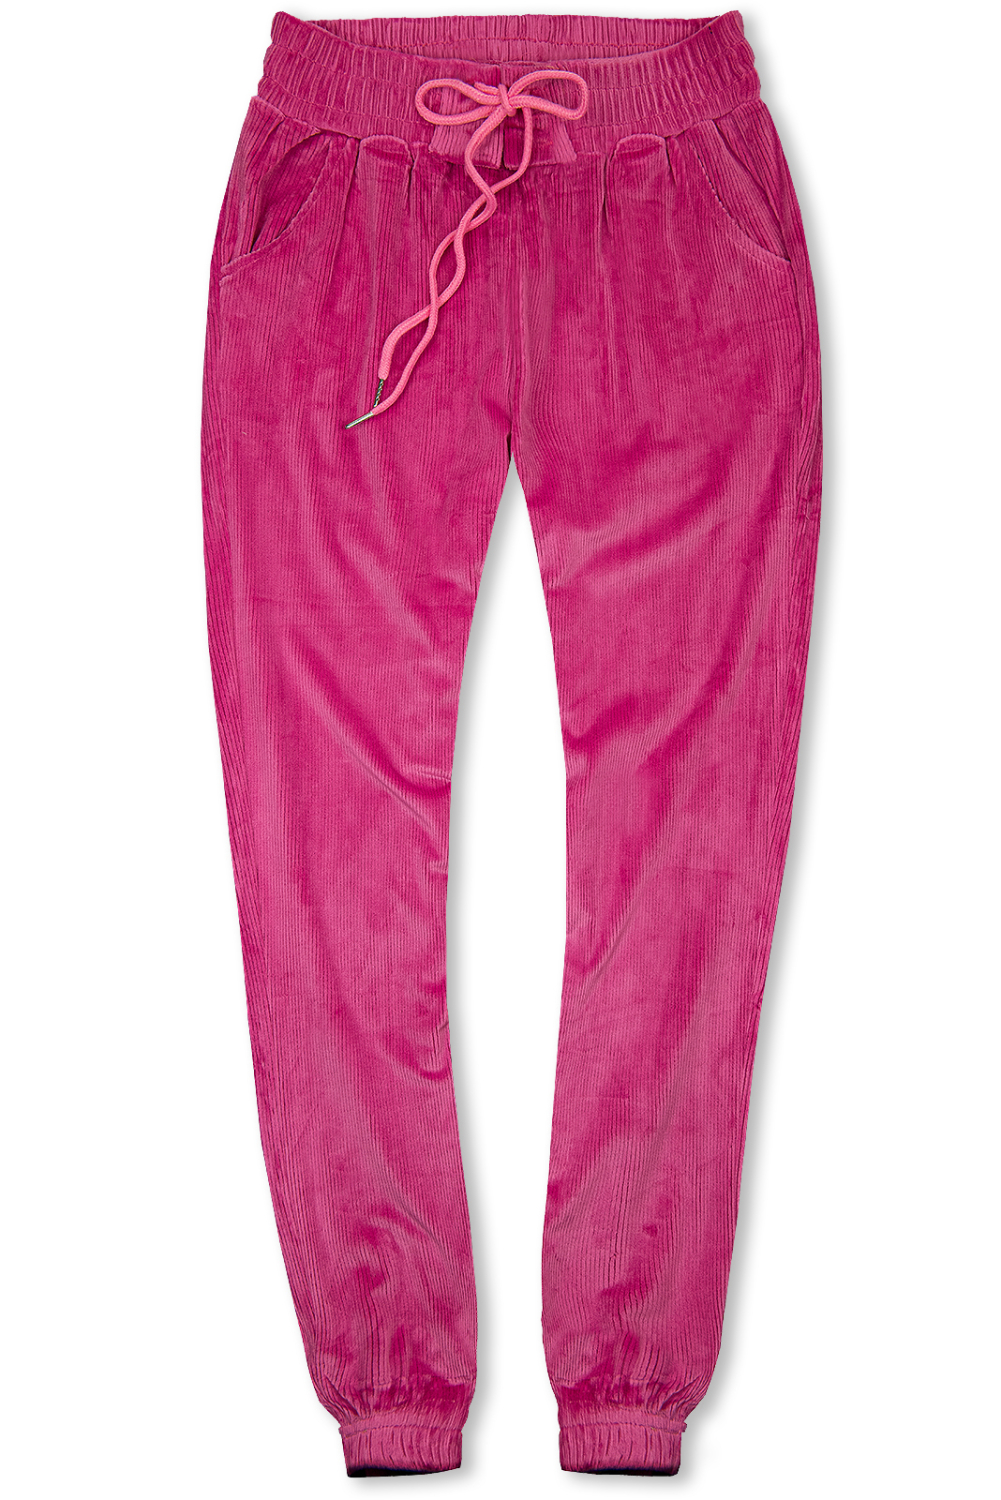 E-shop Růžové kalhoty se šněrováním v pase